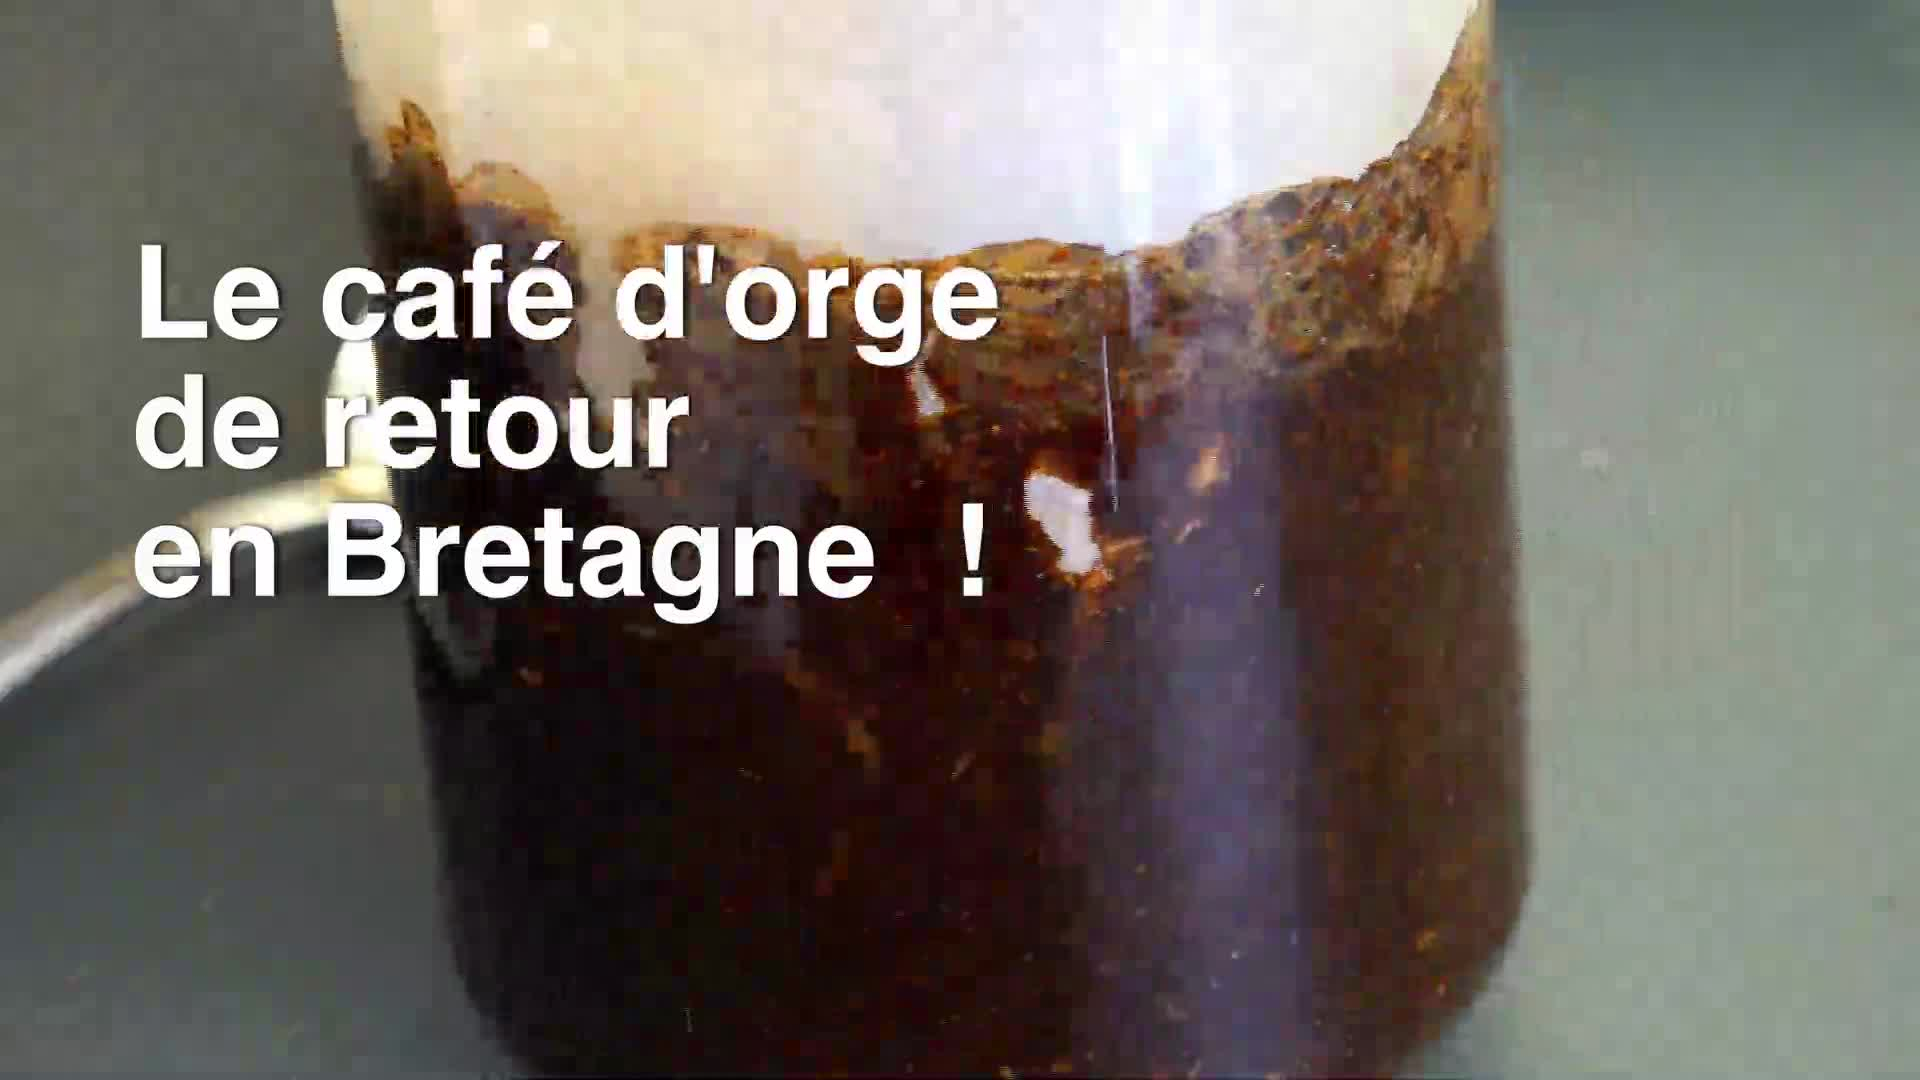 L'orge : l'alternative bretonne au café ! (Tébéo-TébéSud)